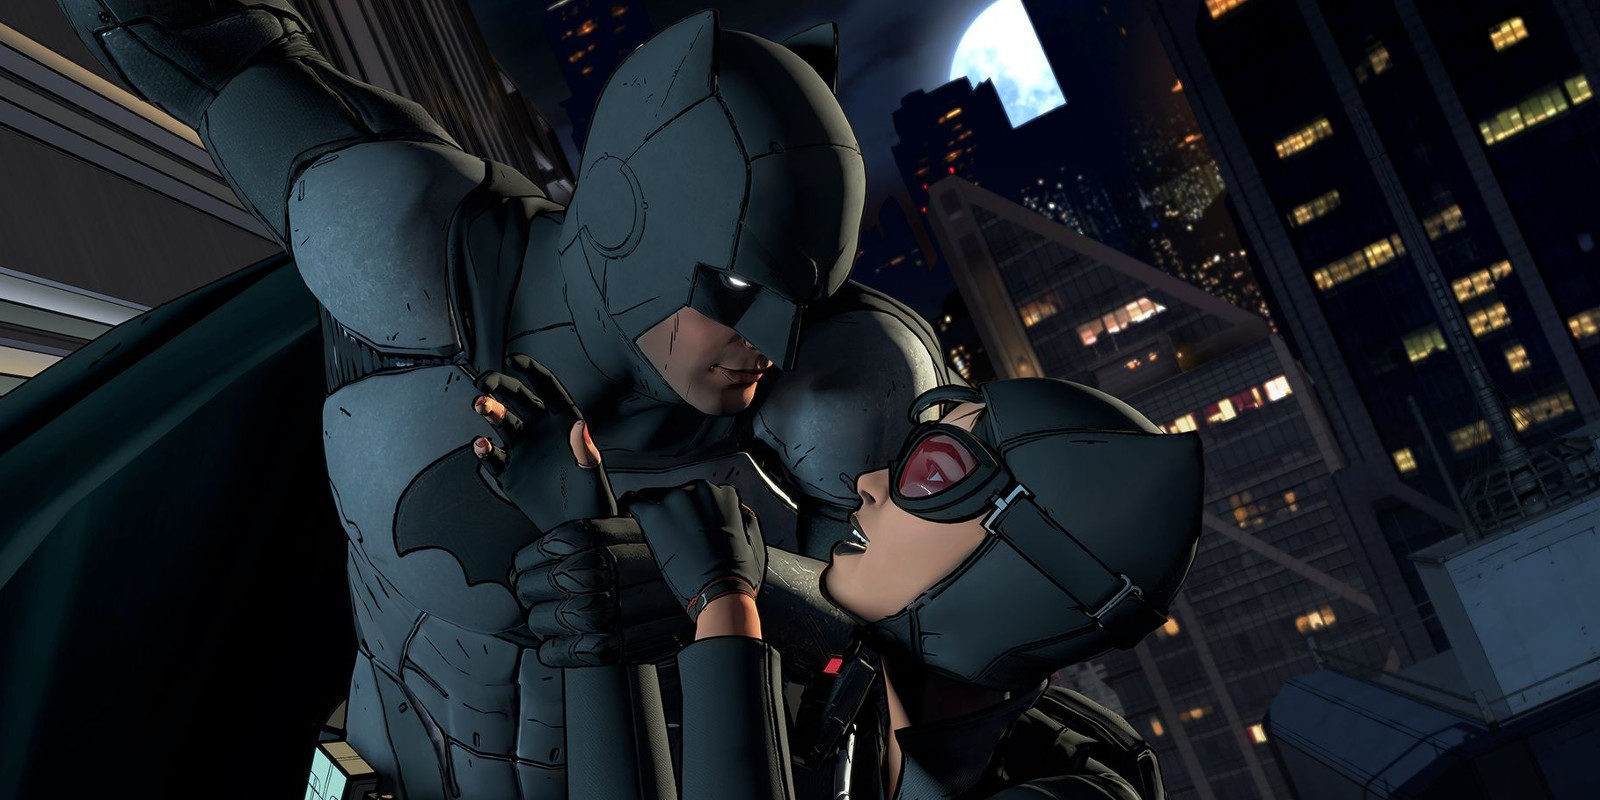 Análisis de 'Batman: The Telltale Series Ep. 1', un potente comienzo y en cierto modo sorprendente